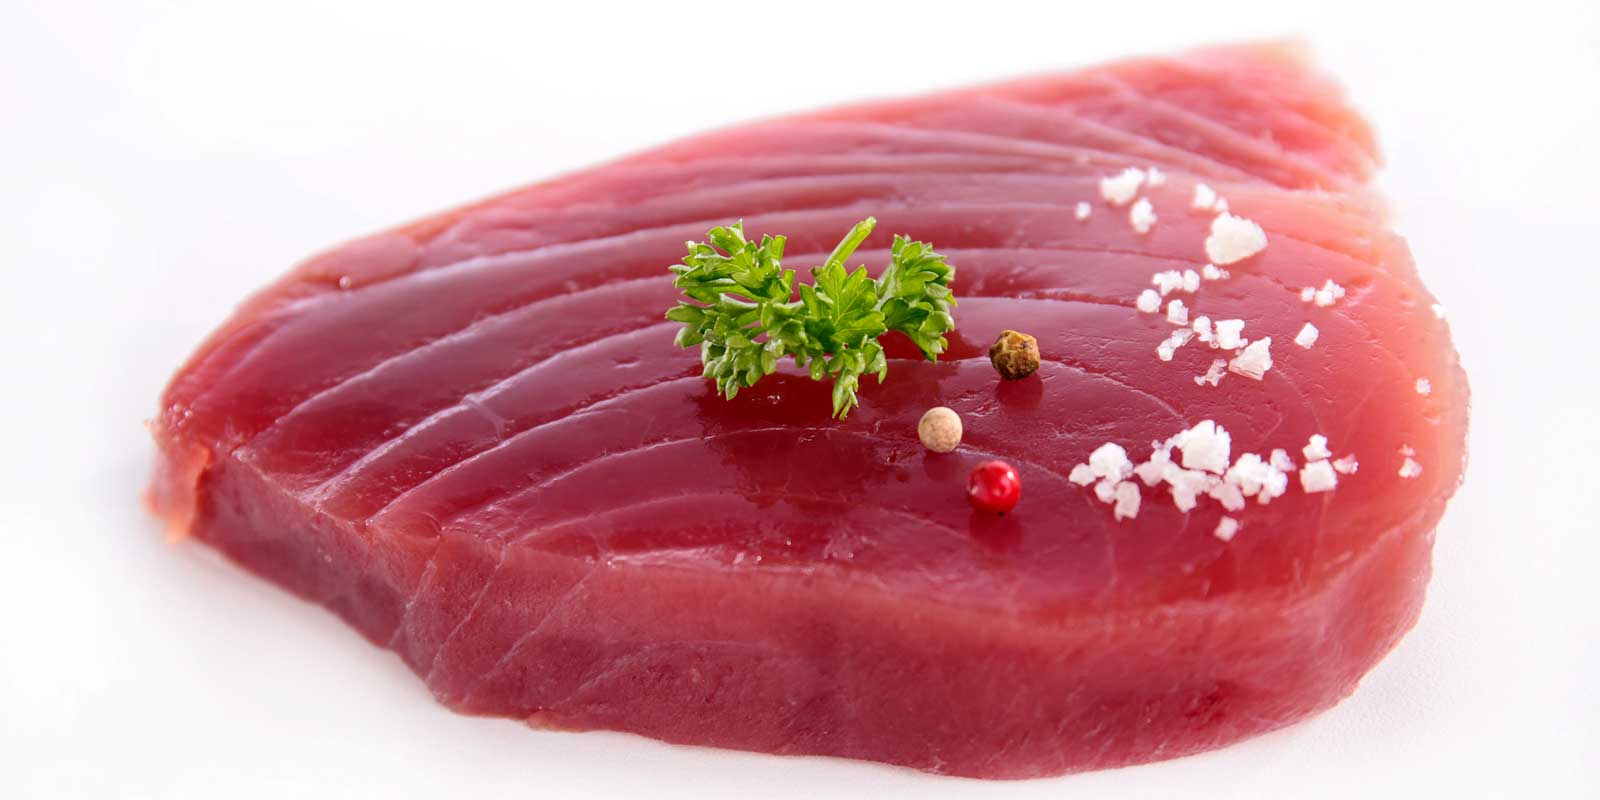 Vyrobky z tuniaka Tuniakove kusky, tuniakovy krem od roznych vyrobcov.